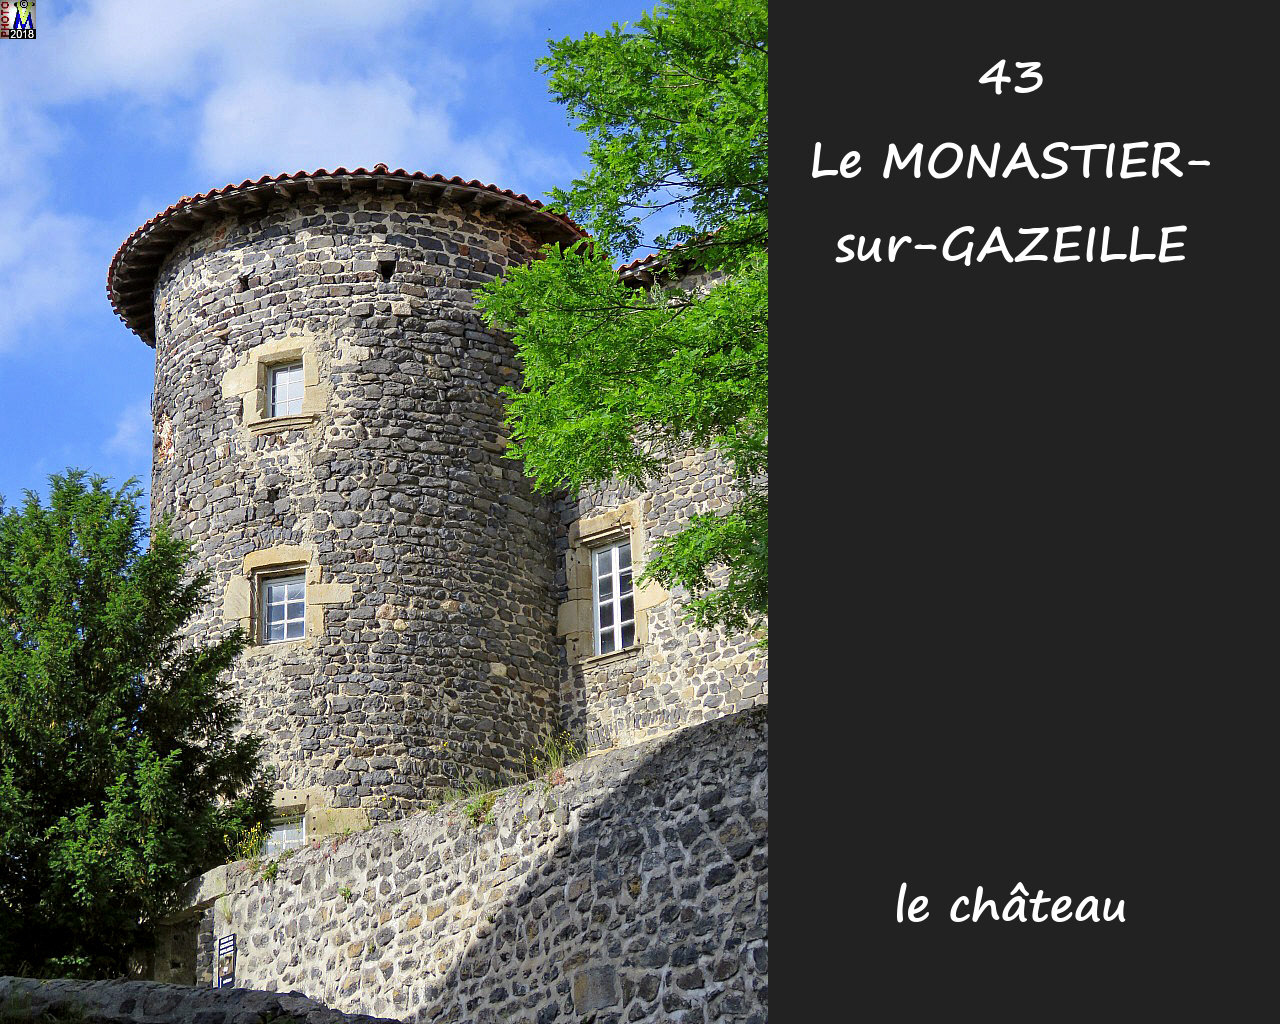 43MONASTIER-GAZEILLE_chateau_110.jpg